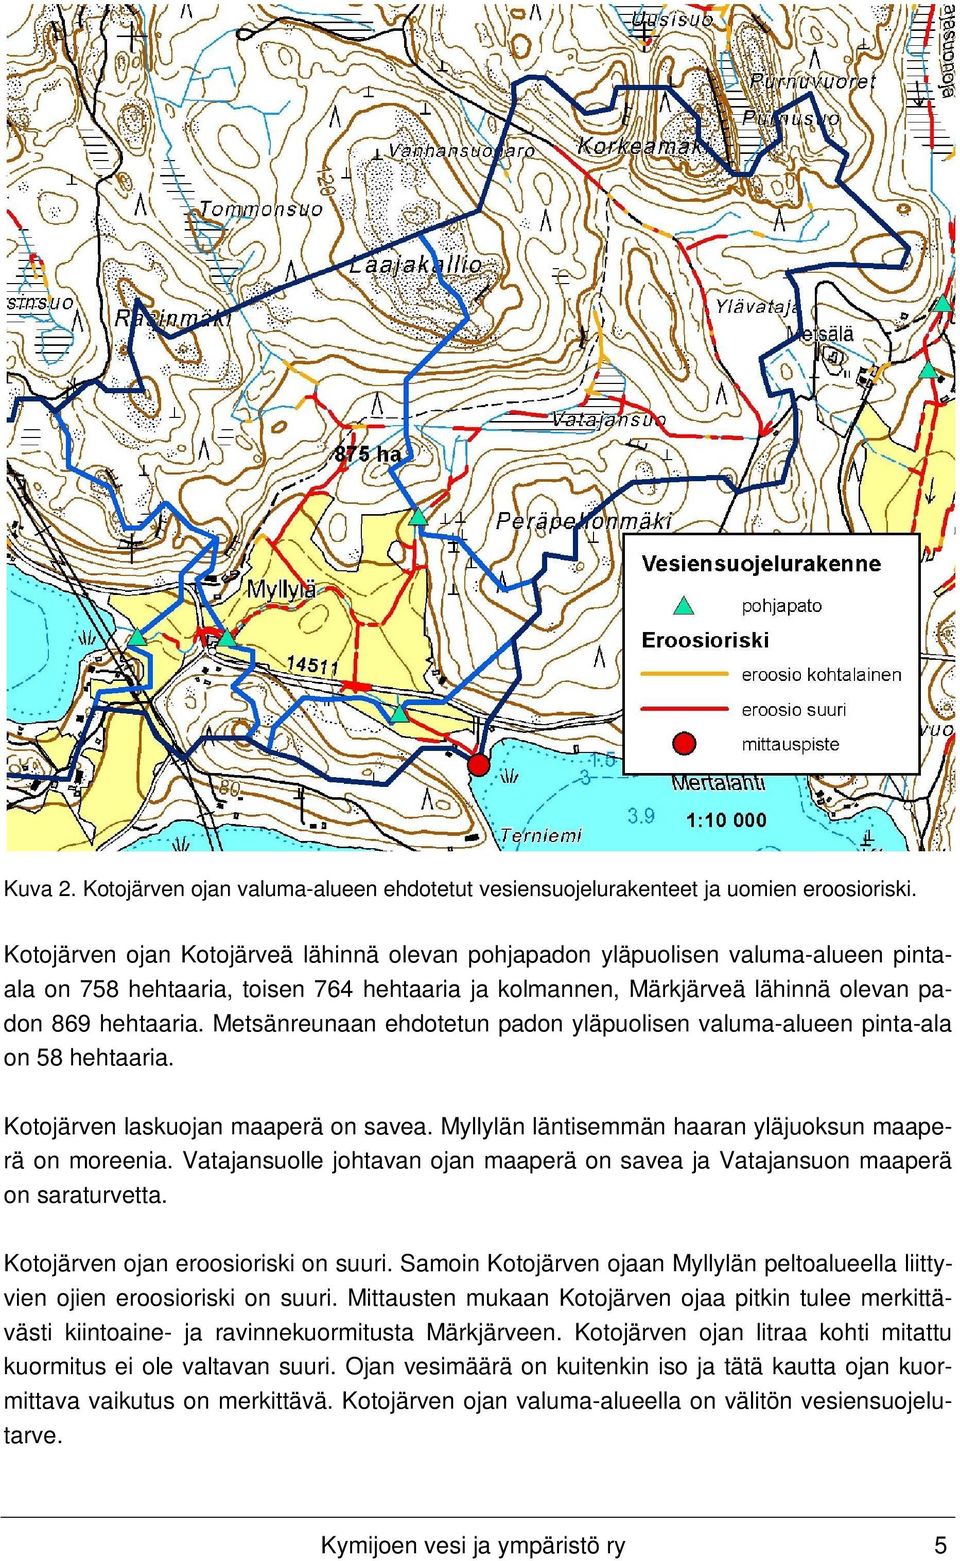 Metsänreunaan ehdotetun padon yläpuolisen valuma-alueen pinta-ala on 58 hehtaaria. Kotojärven laskuojan maaperä on savea. Myllylän läntisemmän haaran yläjuoksun maaperä on moreenia.